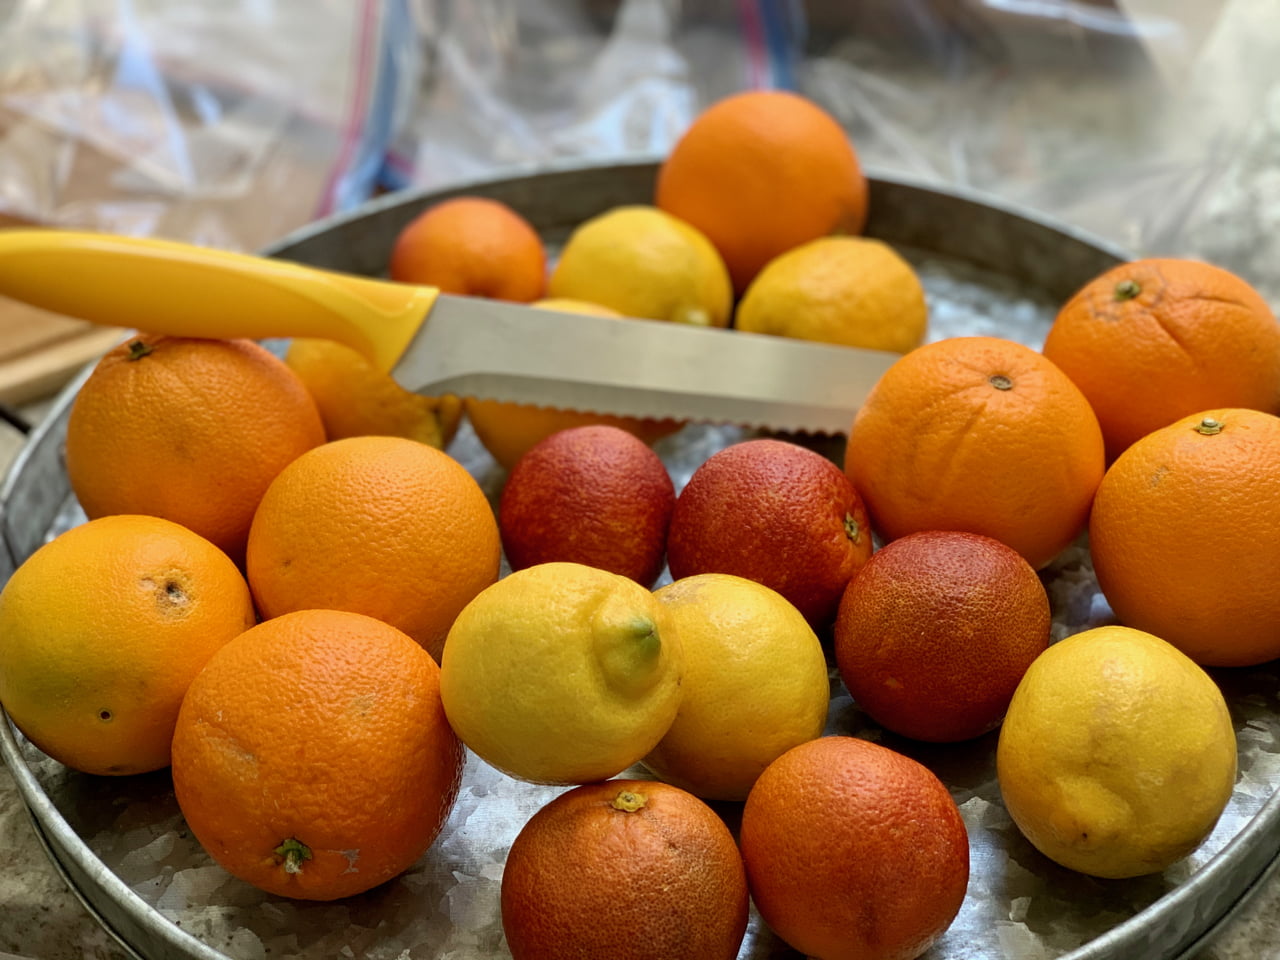 Immune Support Citrus Health Hacks